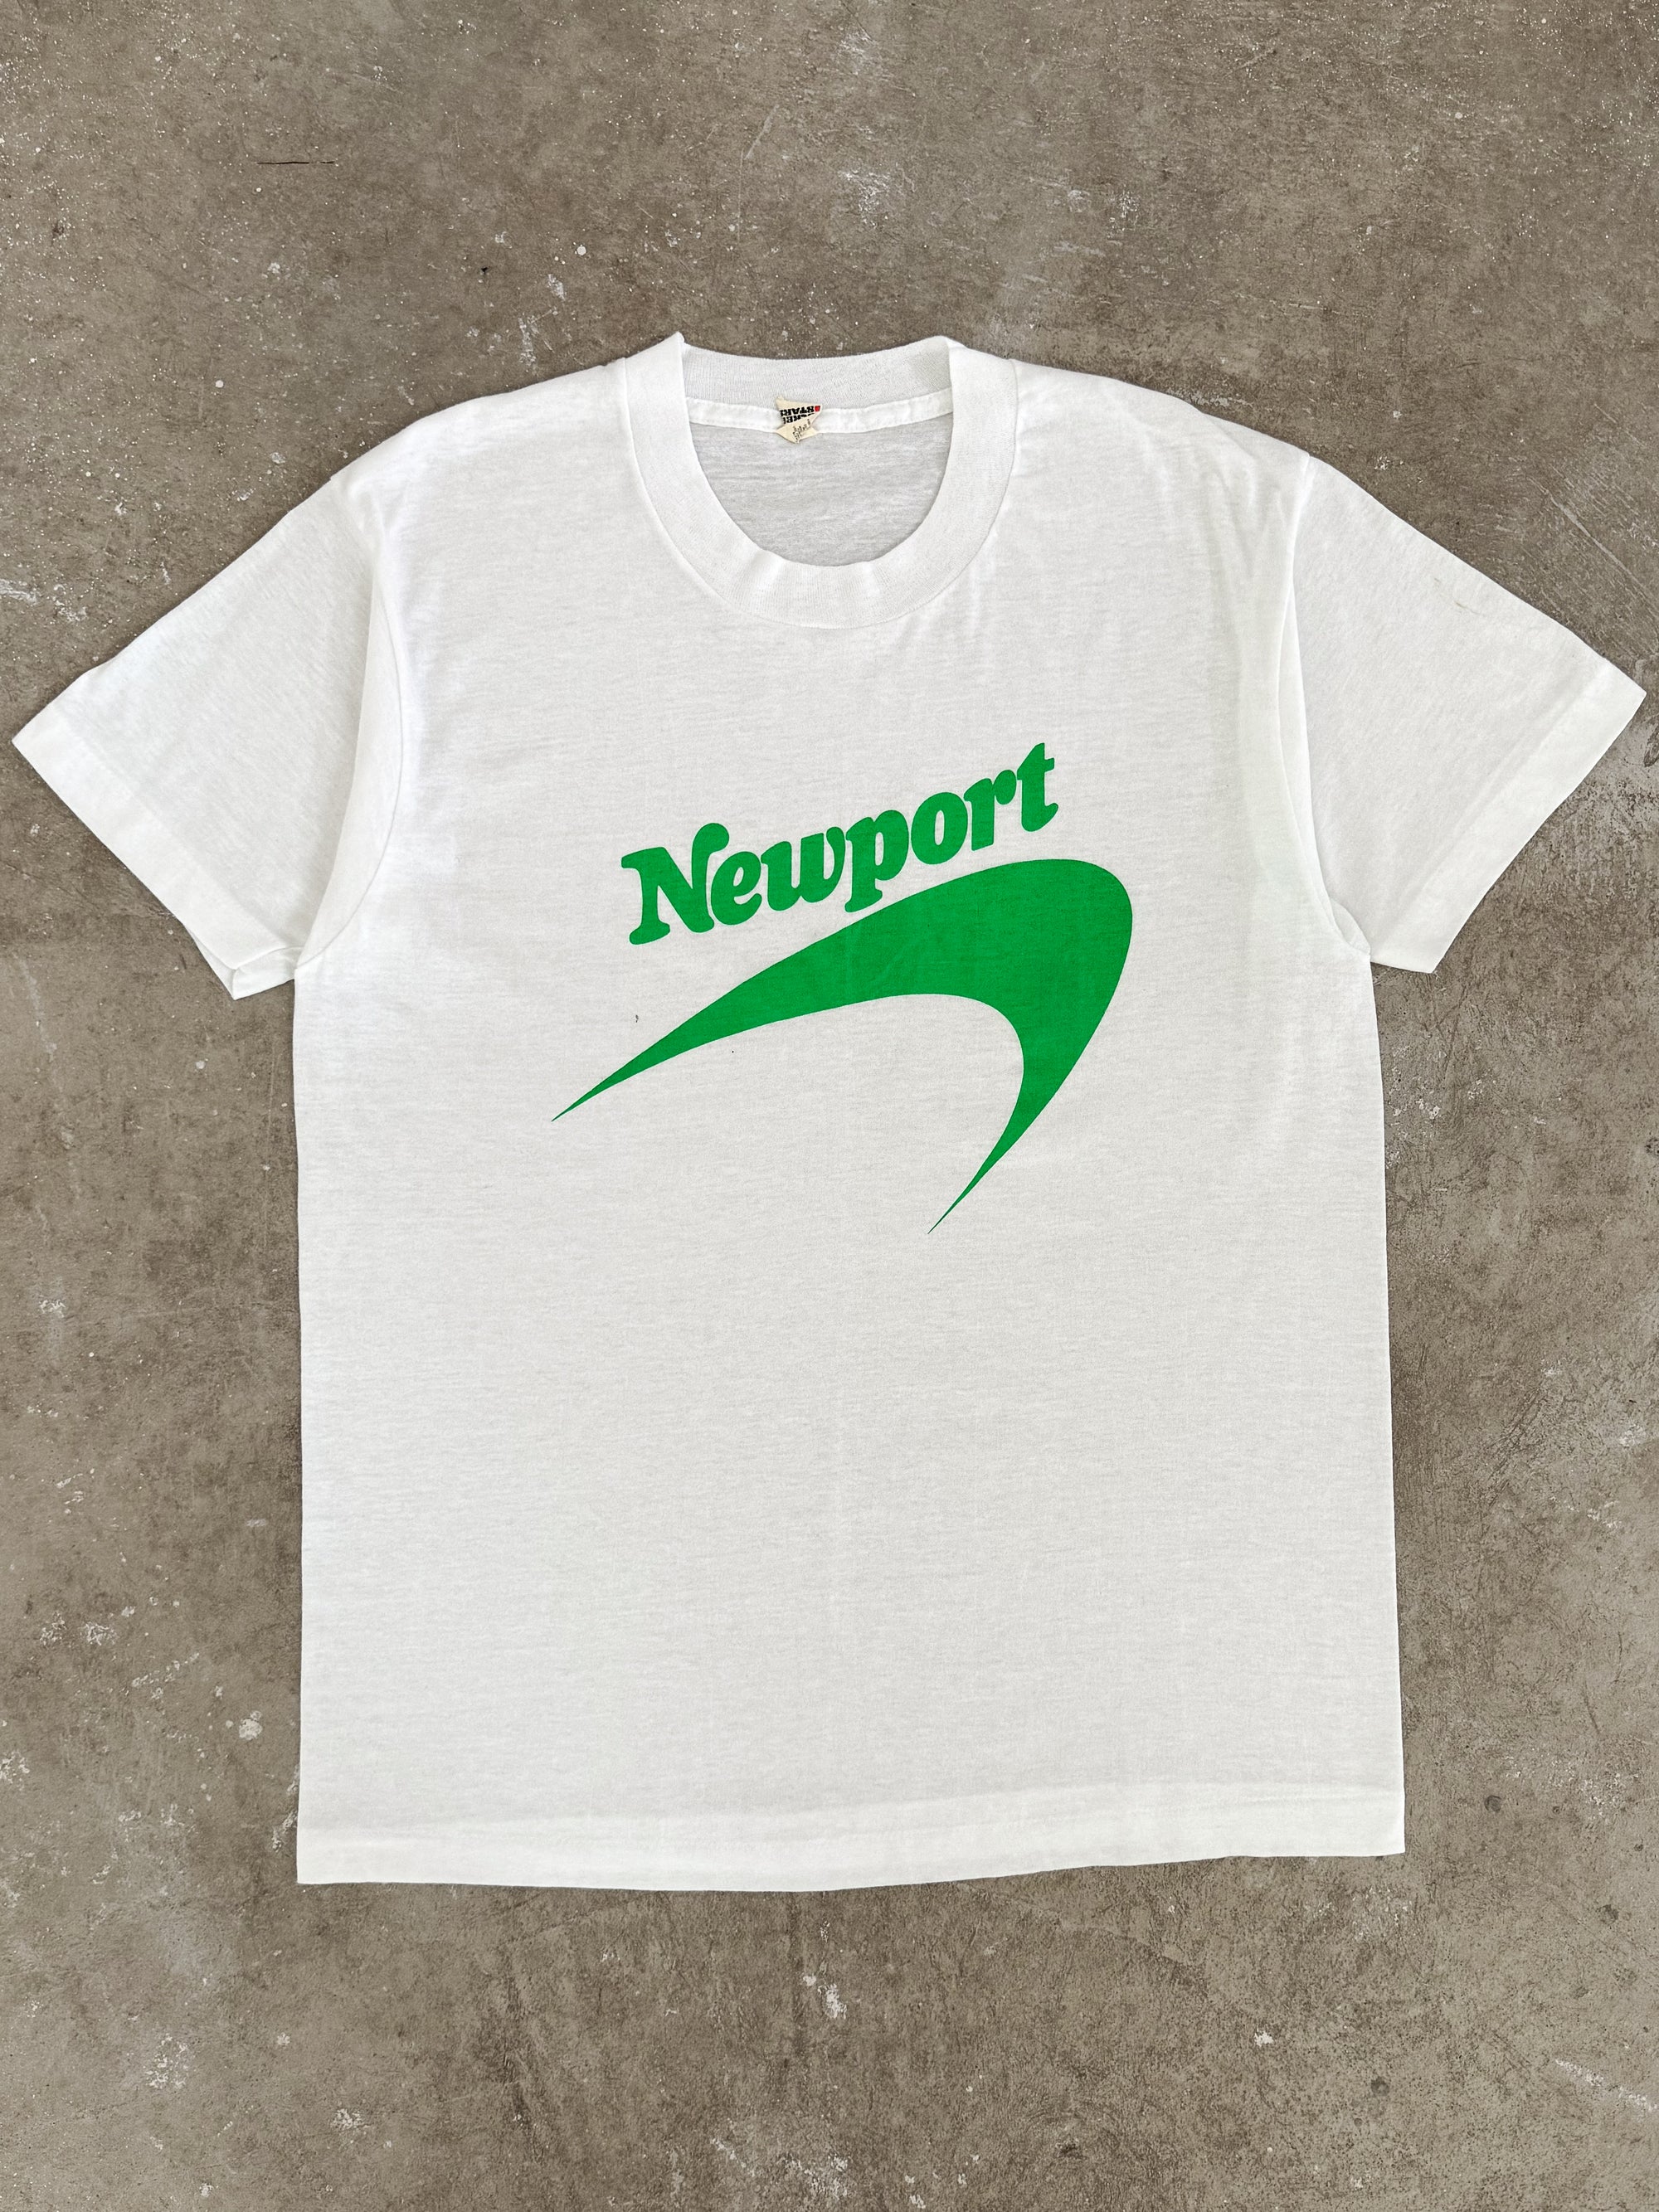 1980s "Newport" Tee (M)